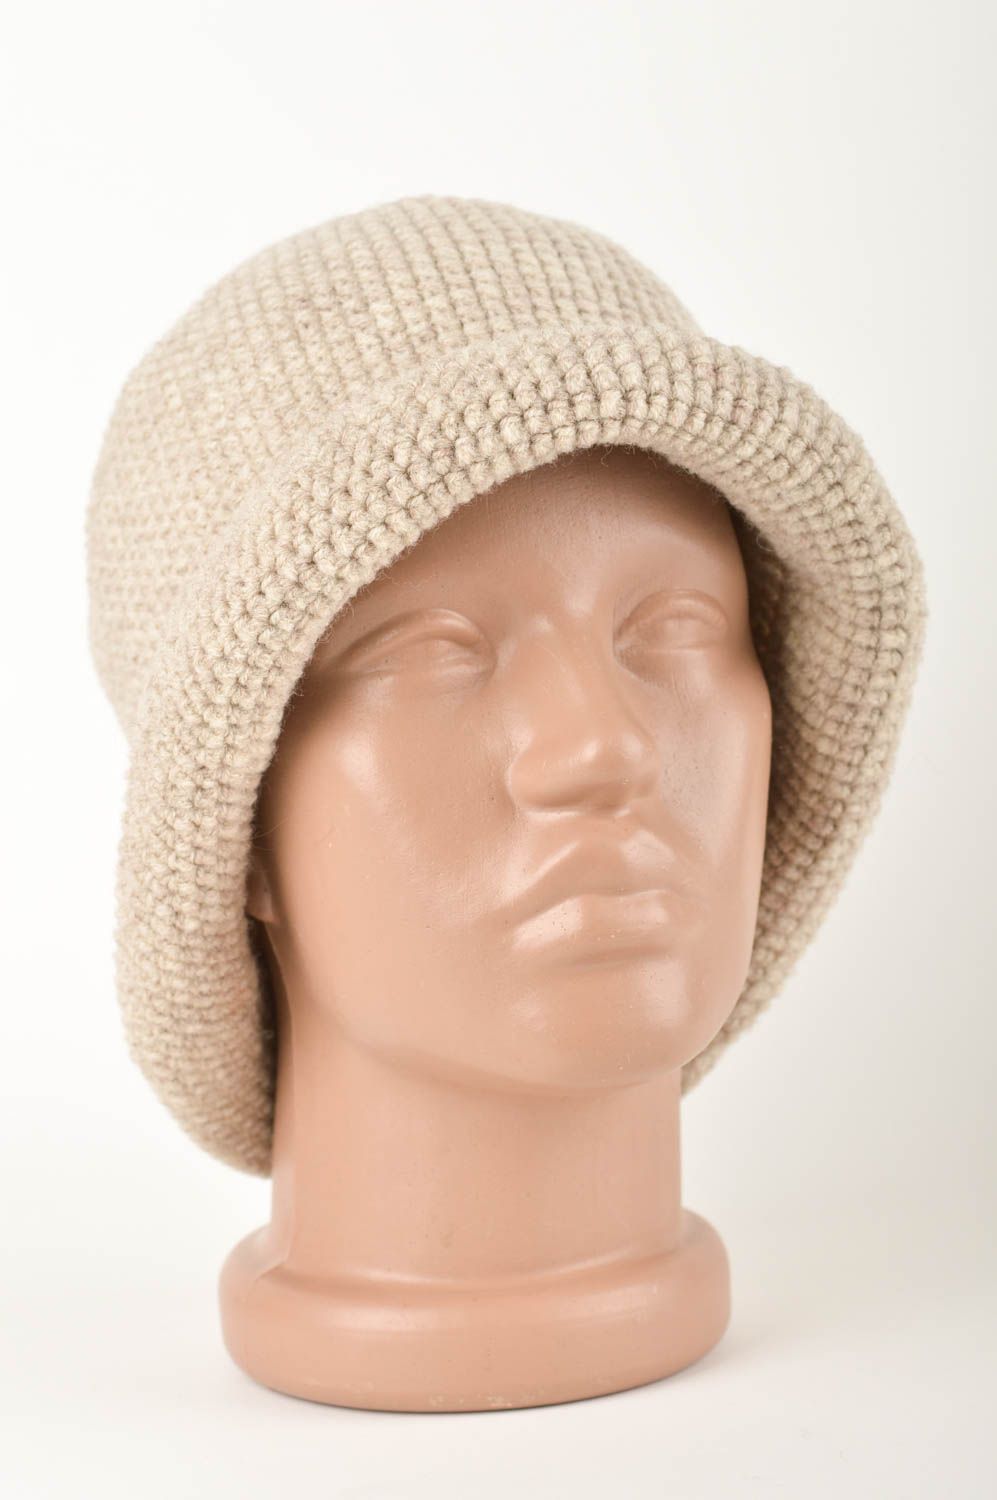 Handmade kopfbedeckung Damen Mütze aus Wolle modisches Accessoire beige schön foto 1